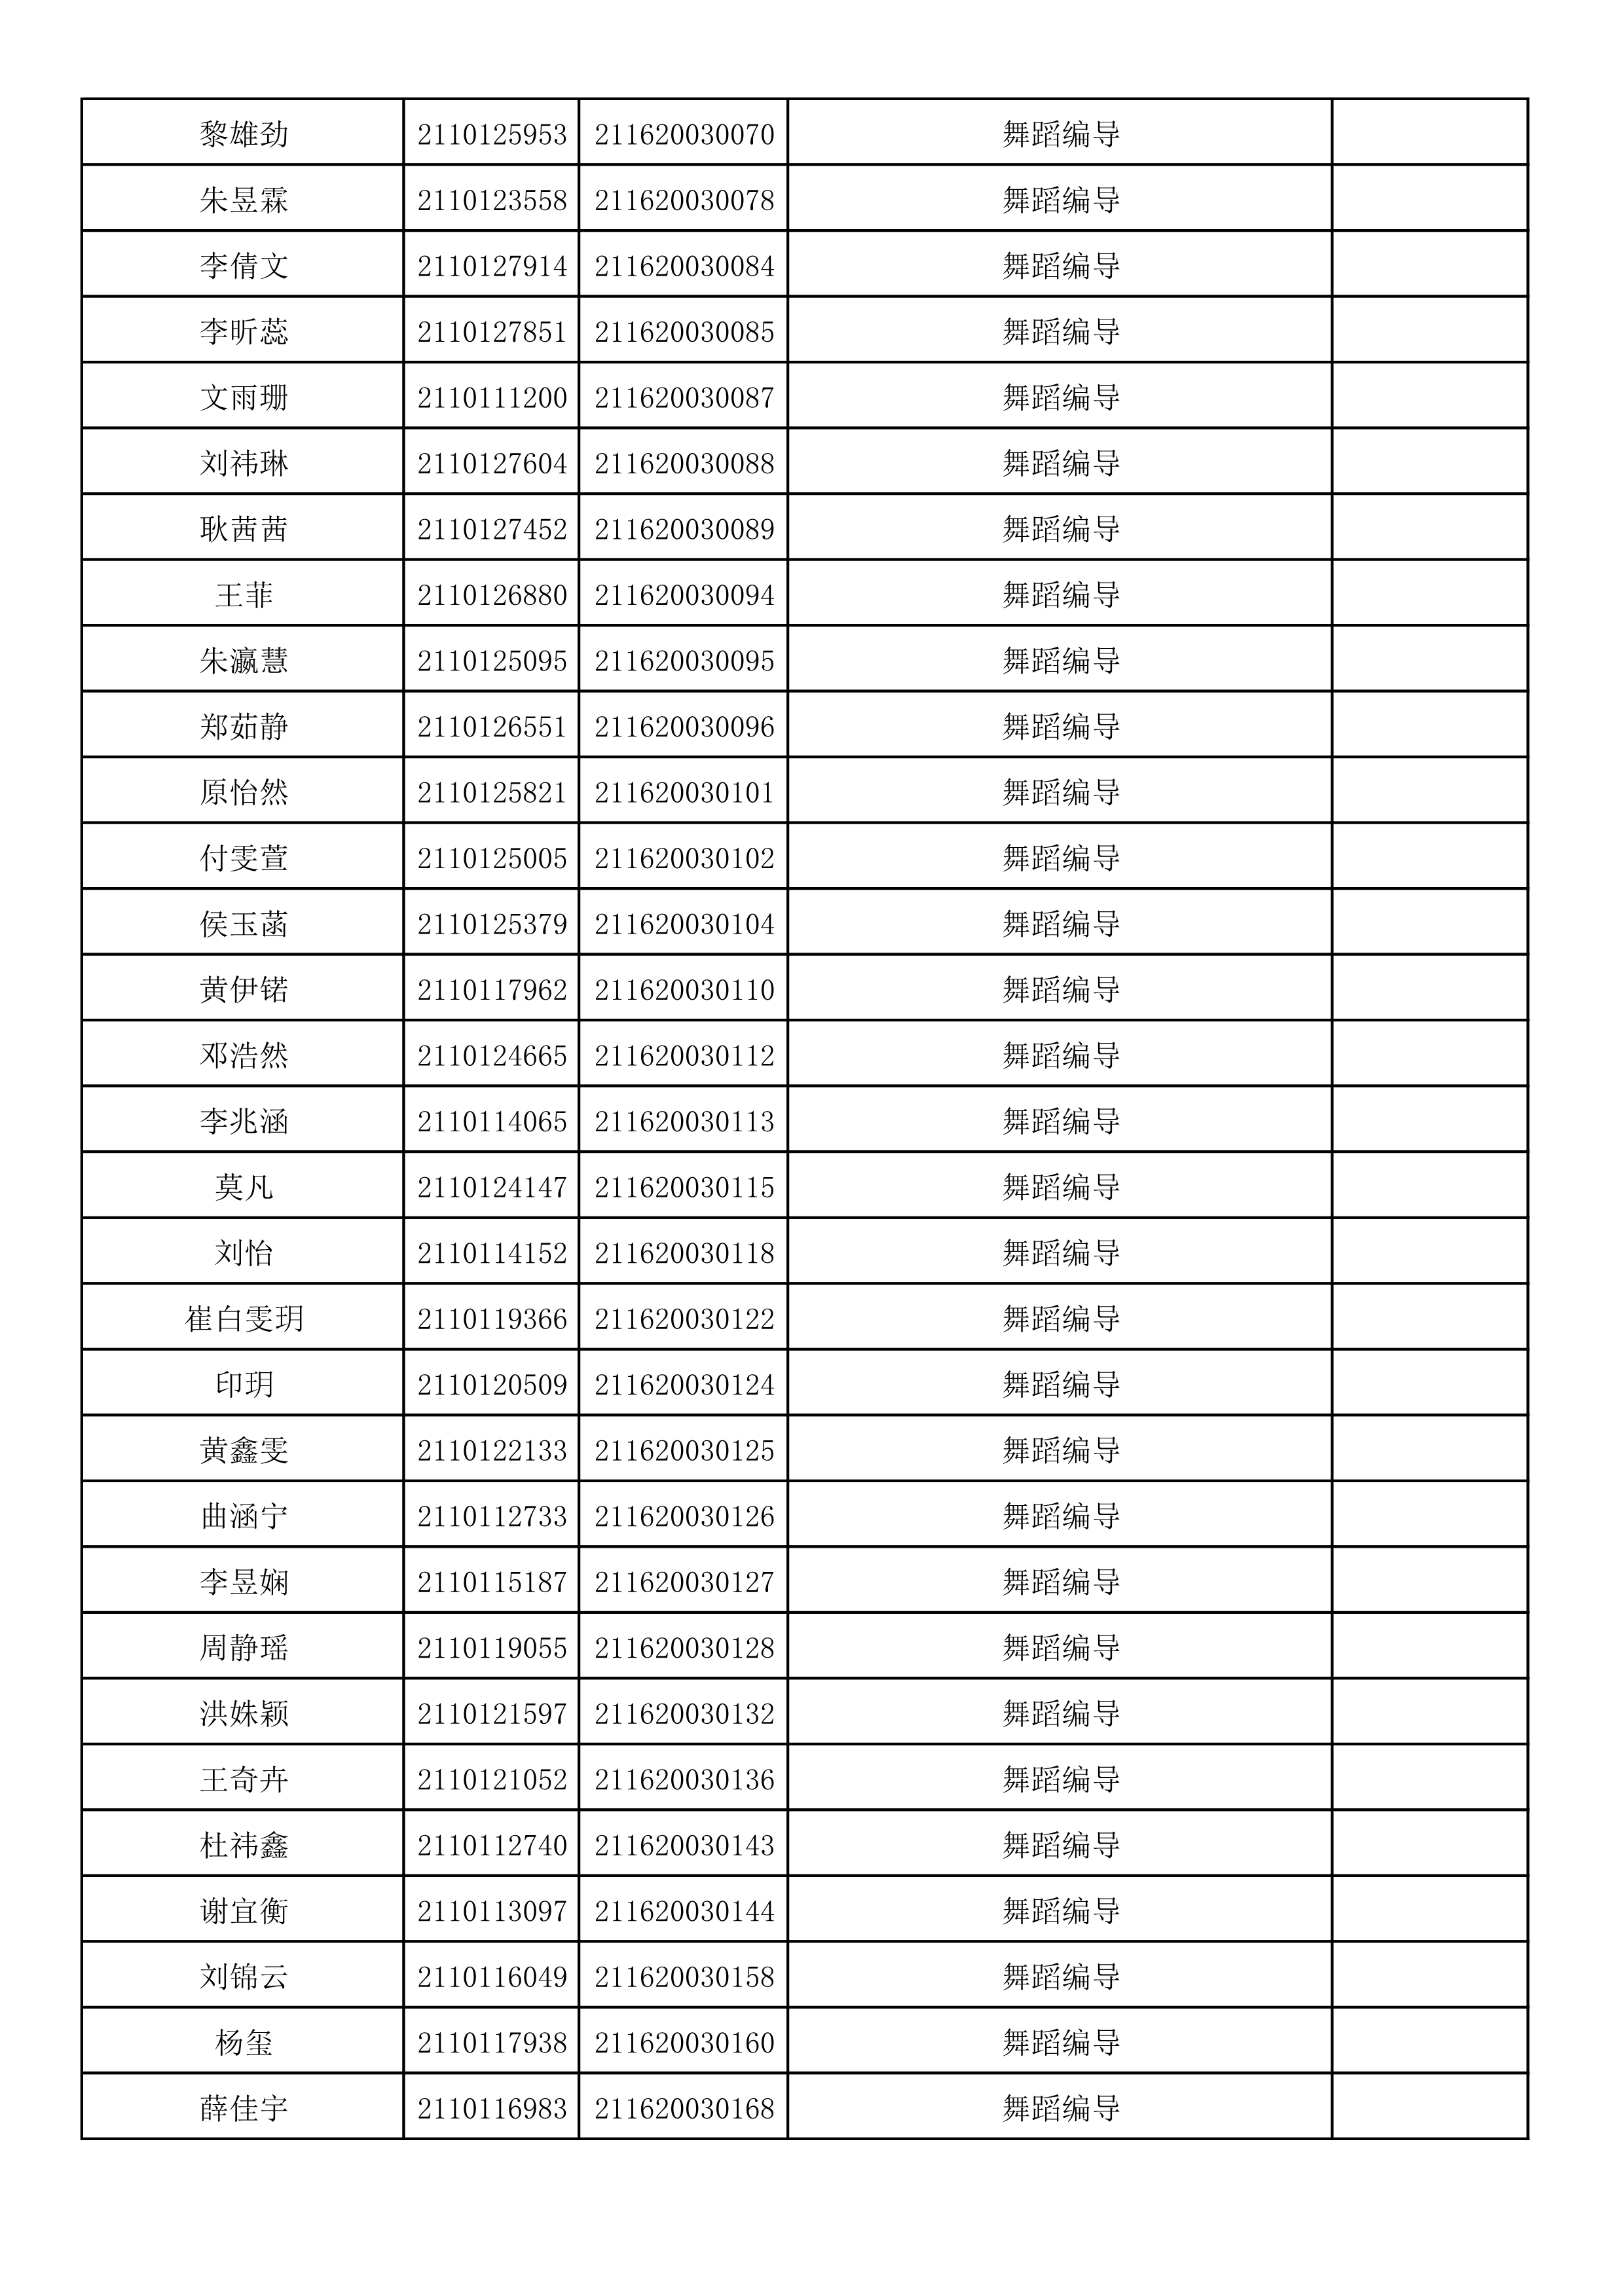 附件2：浙江音乐学院2021年本科招生专业校考初试合格考生名单_85.png